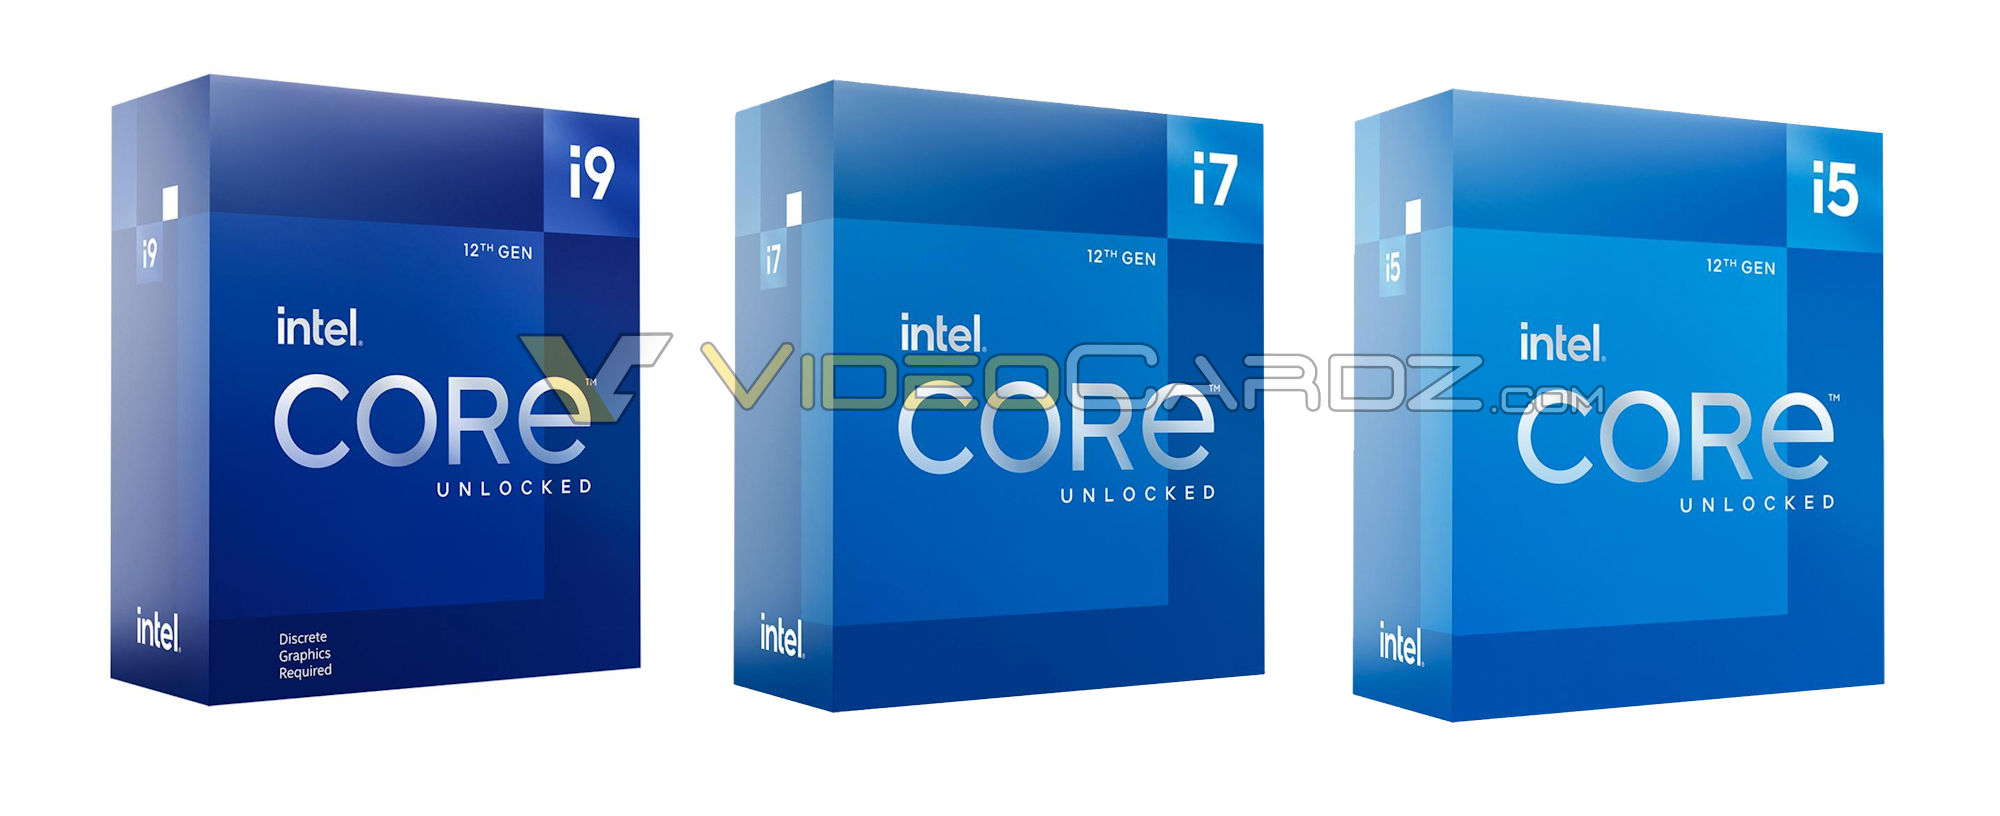 Intel 12th Gen Core Alder Lake Packaging